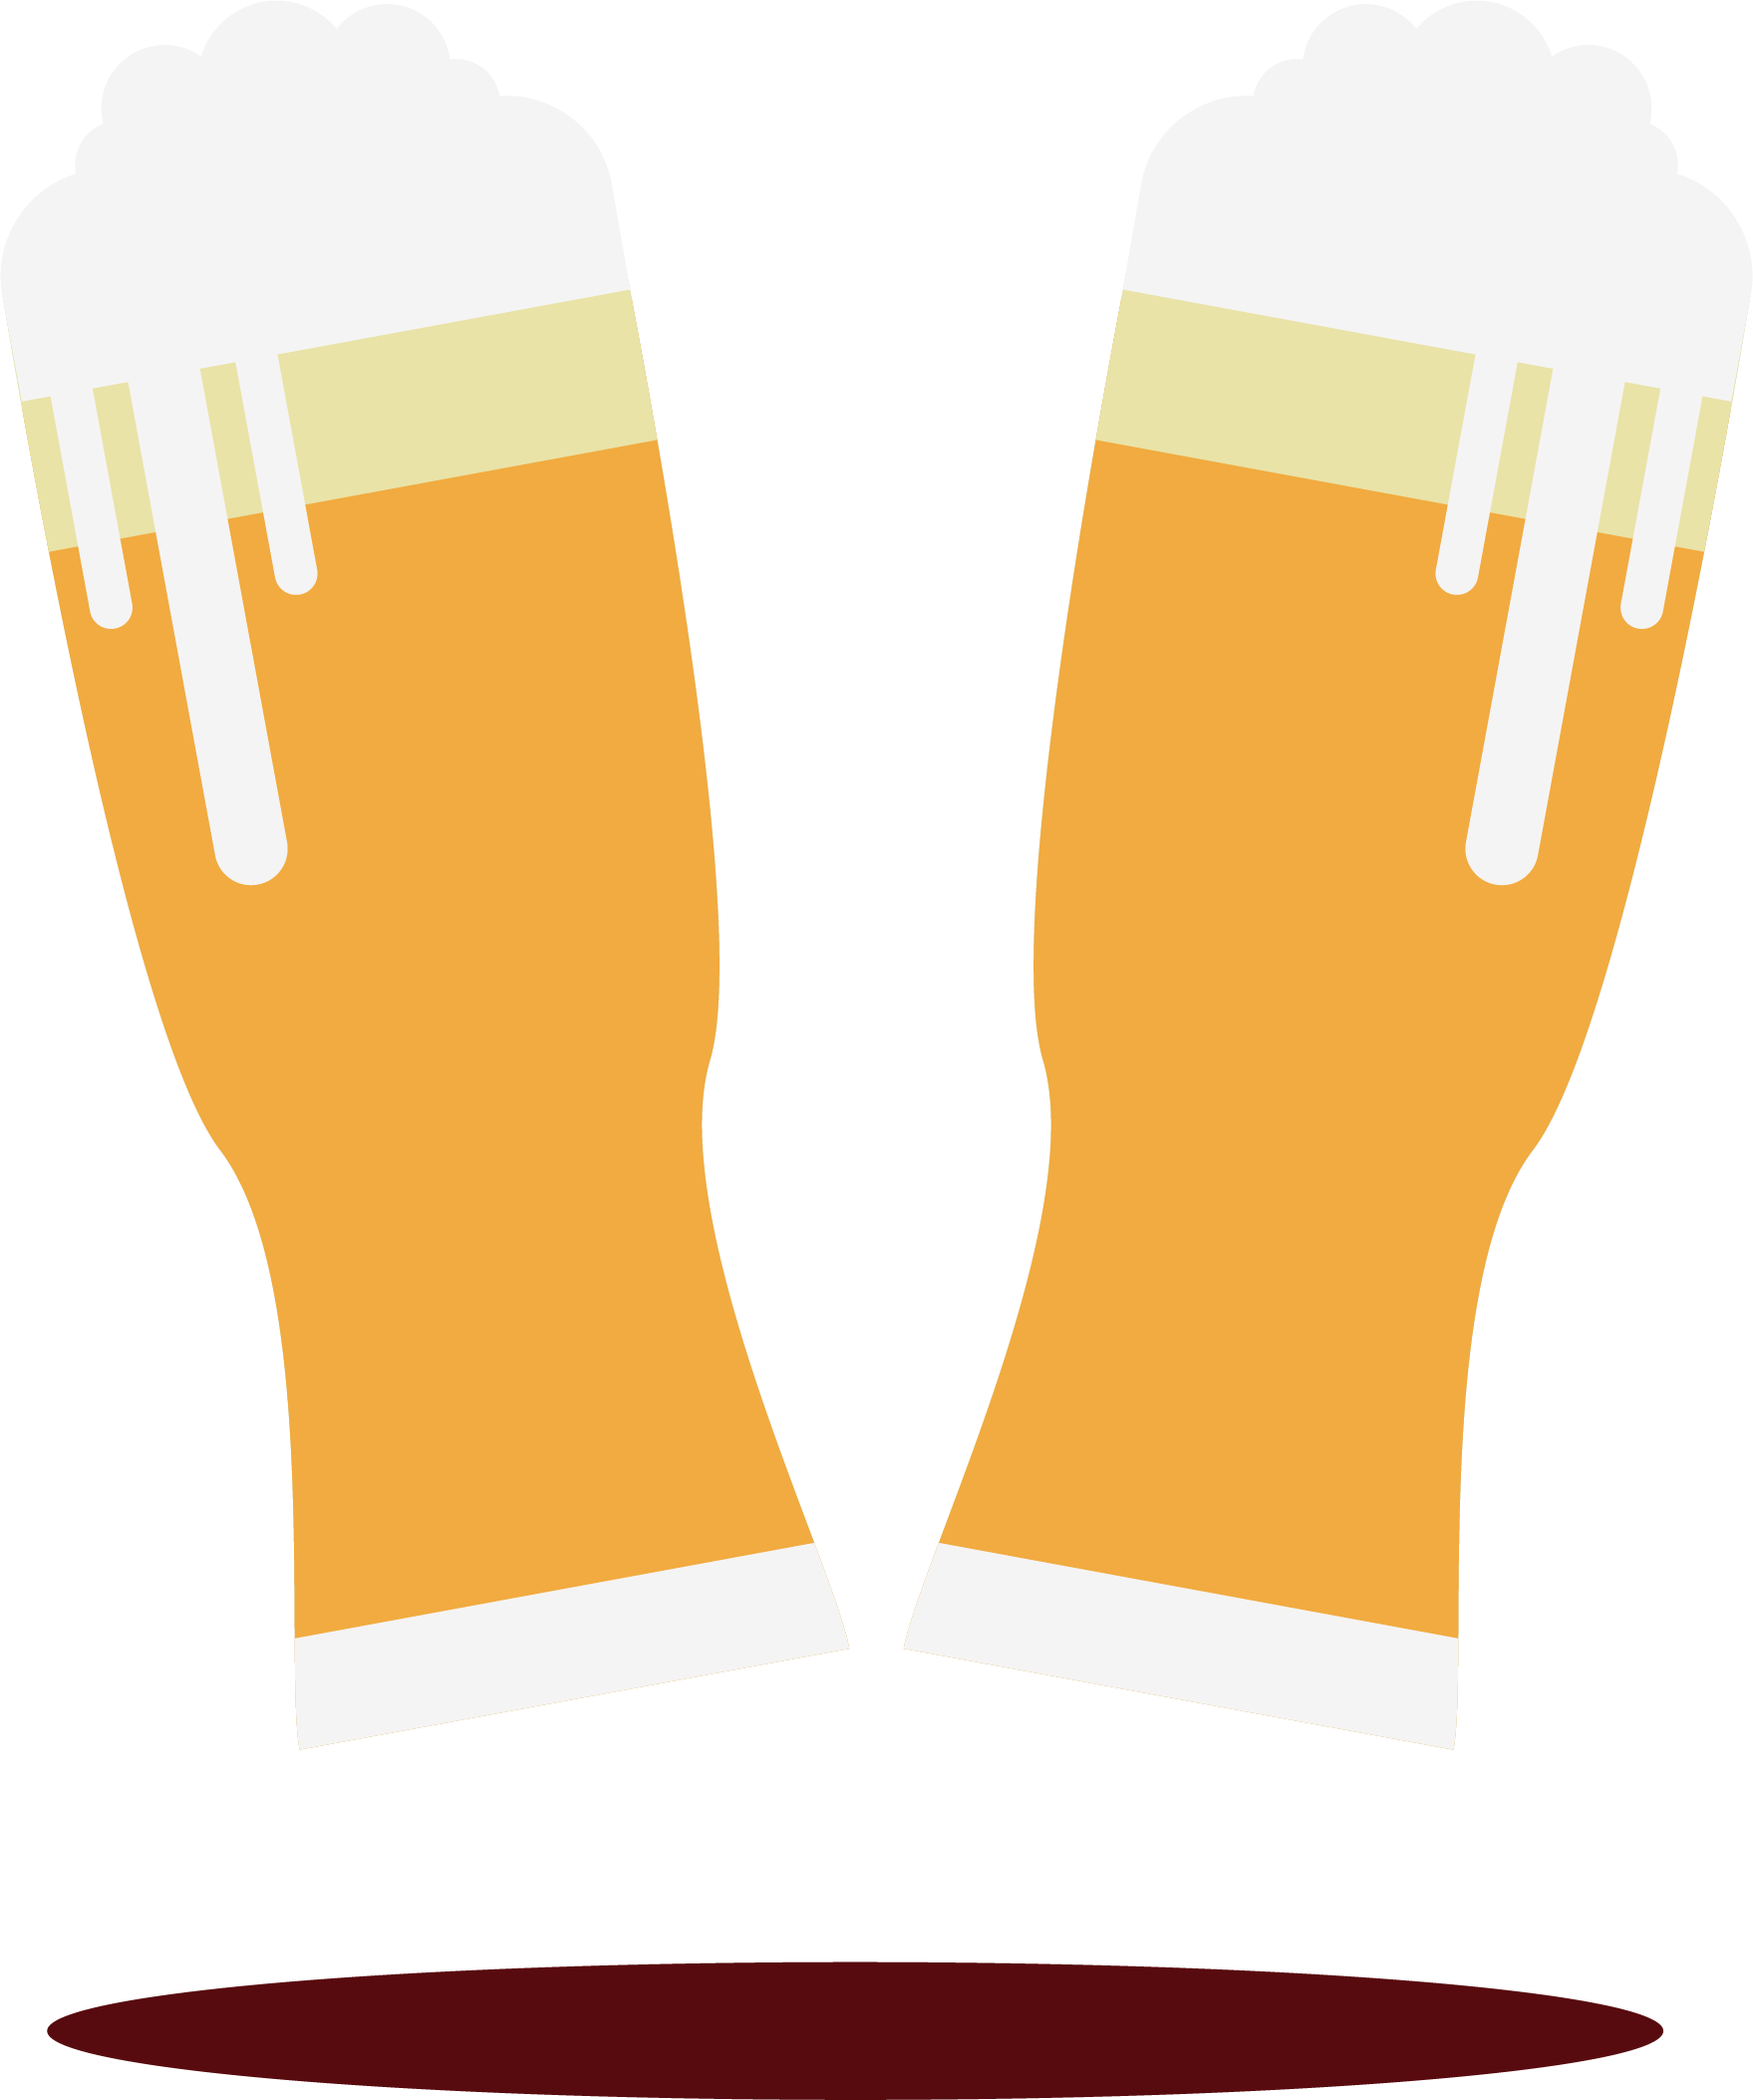 Beer Common Hop Hops - Hops (1759x2107)